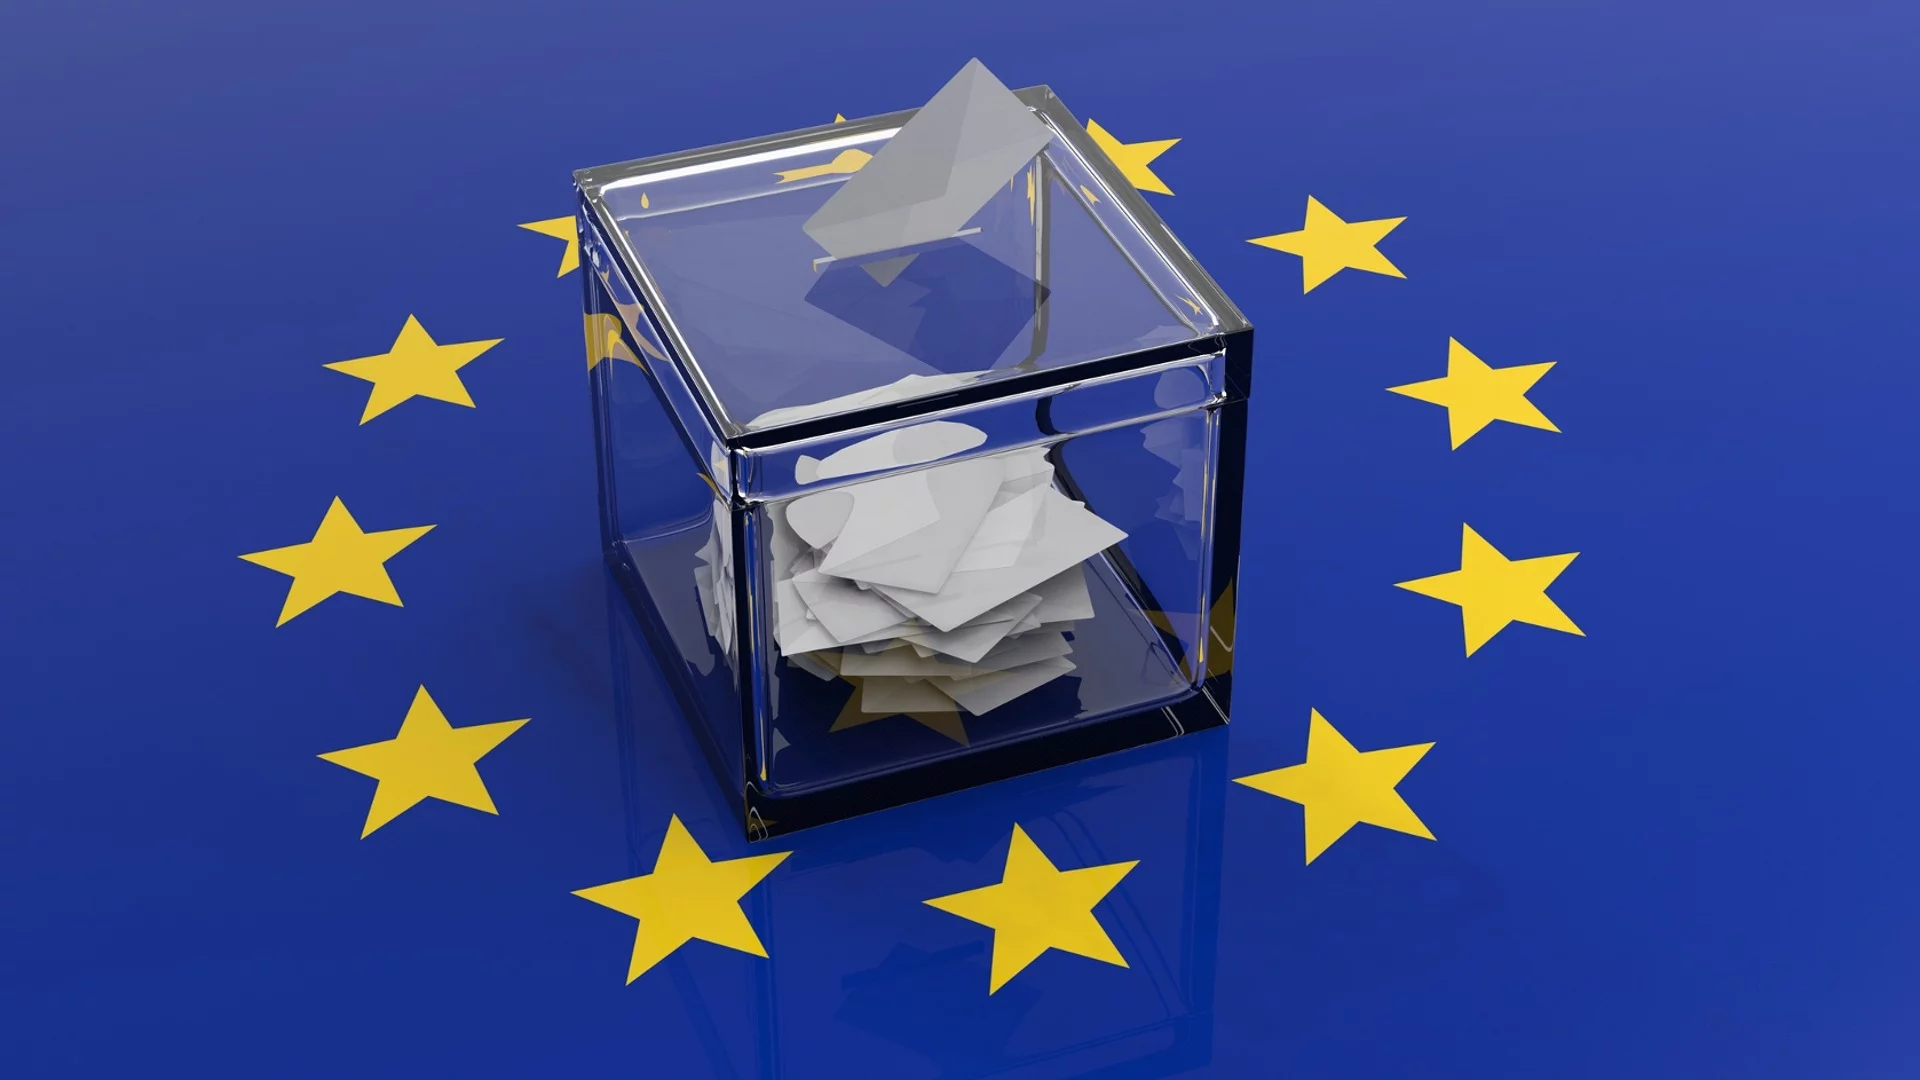 ЦИК обявява резултатите от изборите за Европейски парламент